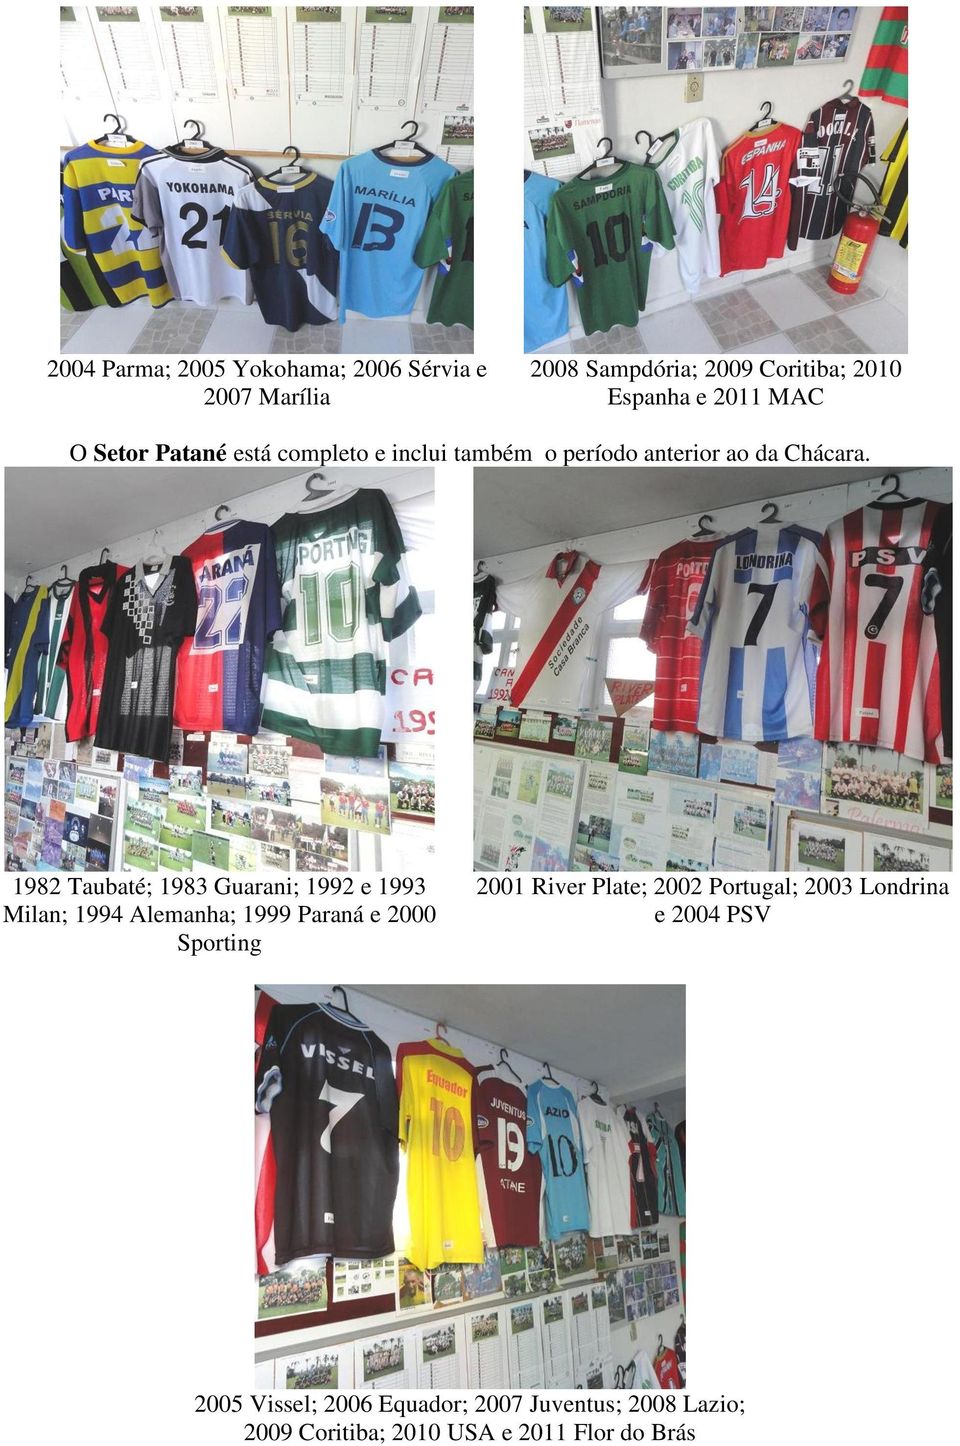 1982 Taubaté; 1983 Guarani; 1992 e 1993 Milan; 1994 Alemanha; 1999 Paraná e 2000 Sporting 2001 River Plate;